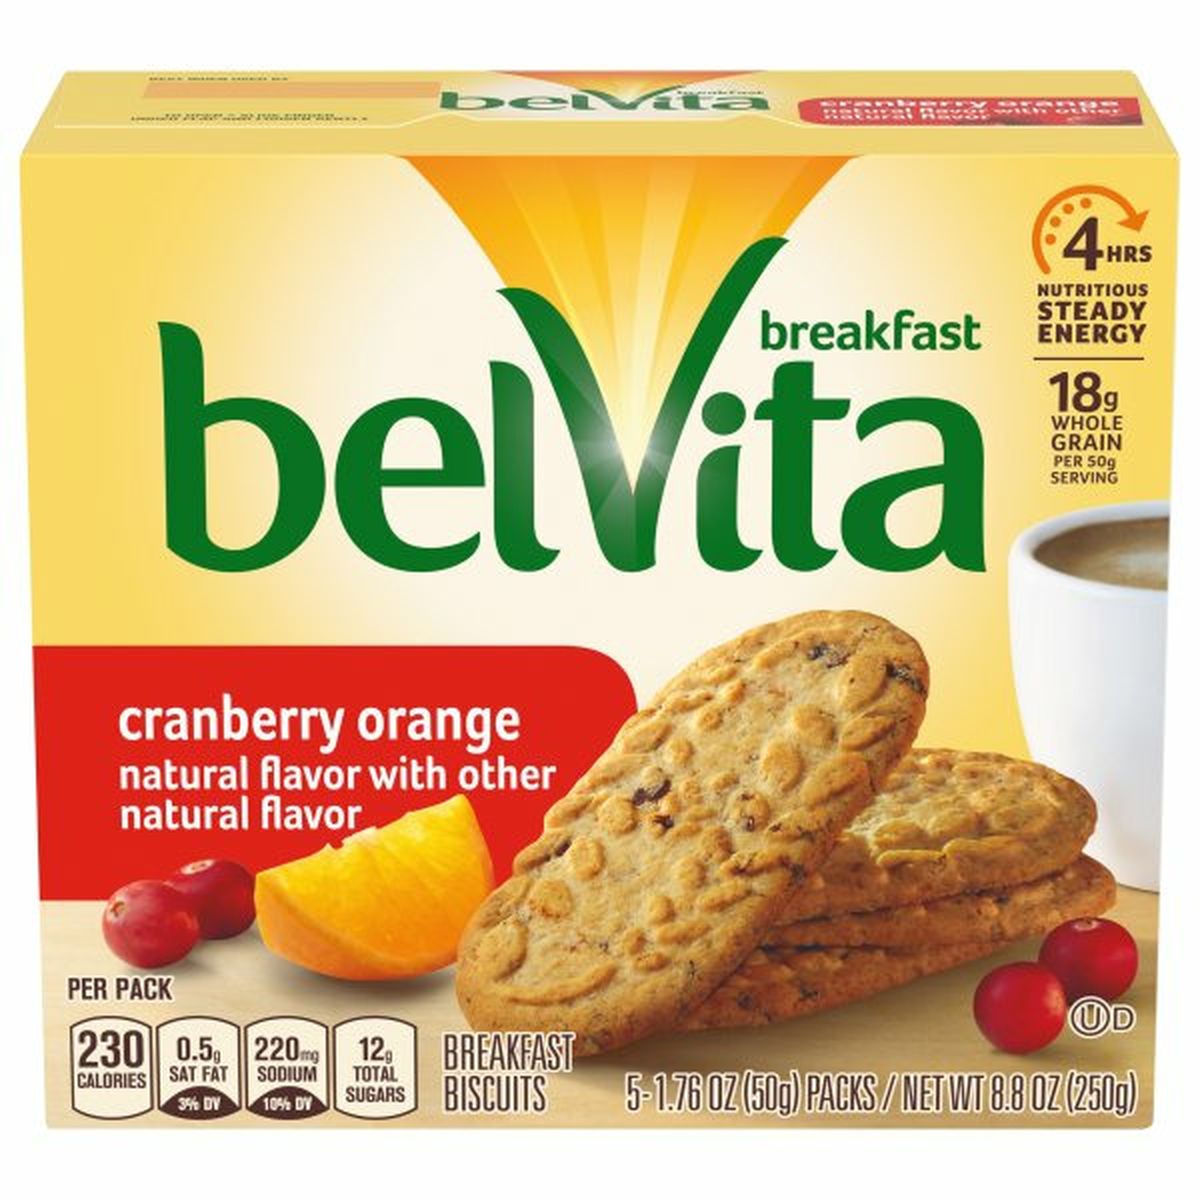 Calories in belVita Breakfast Biscuits, Cranberry Orange